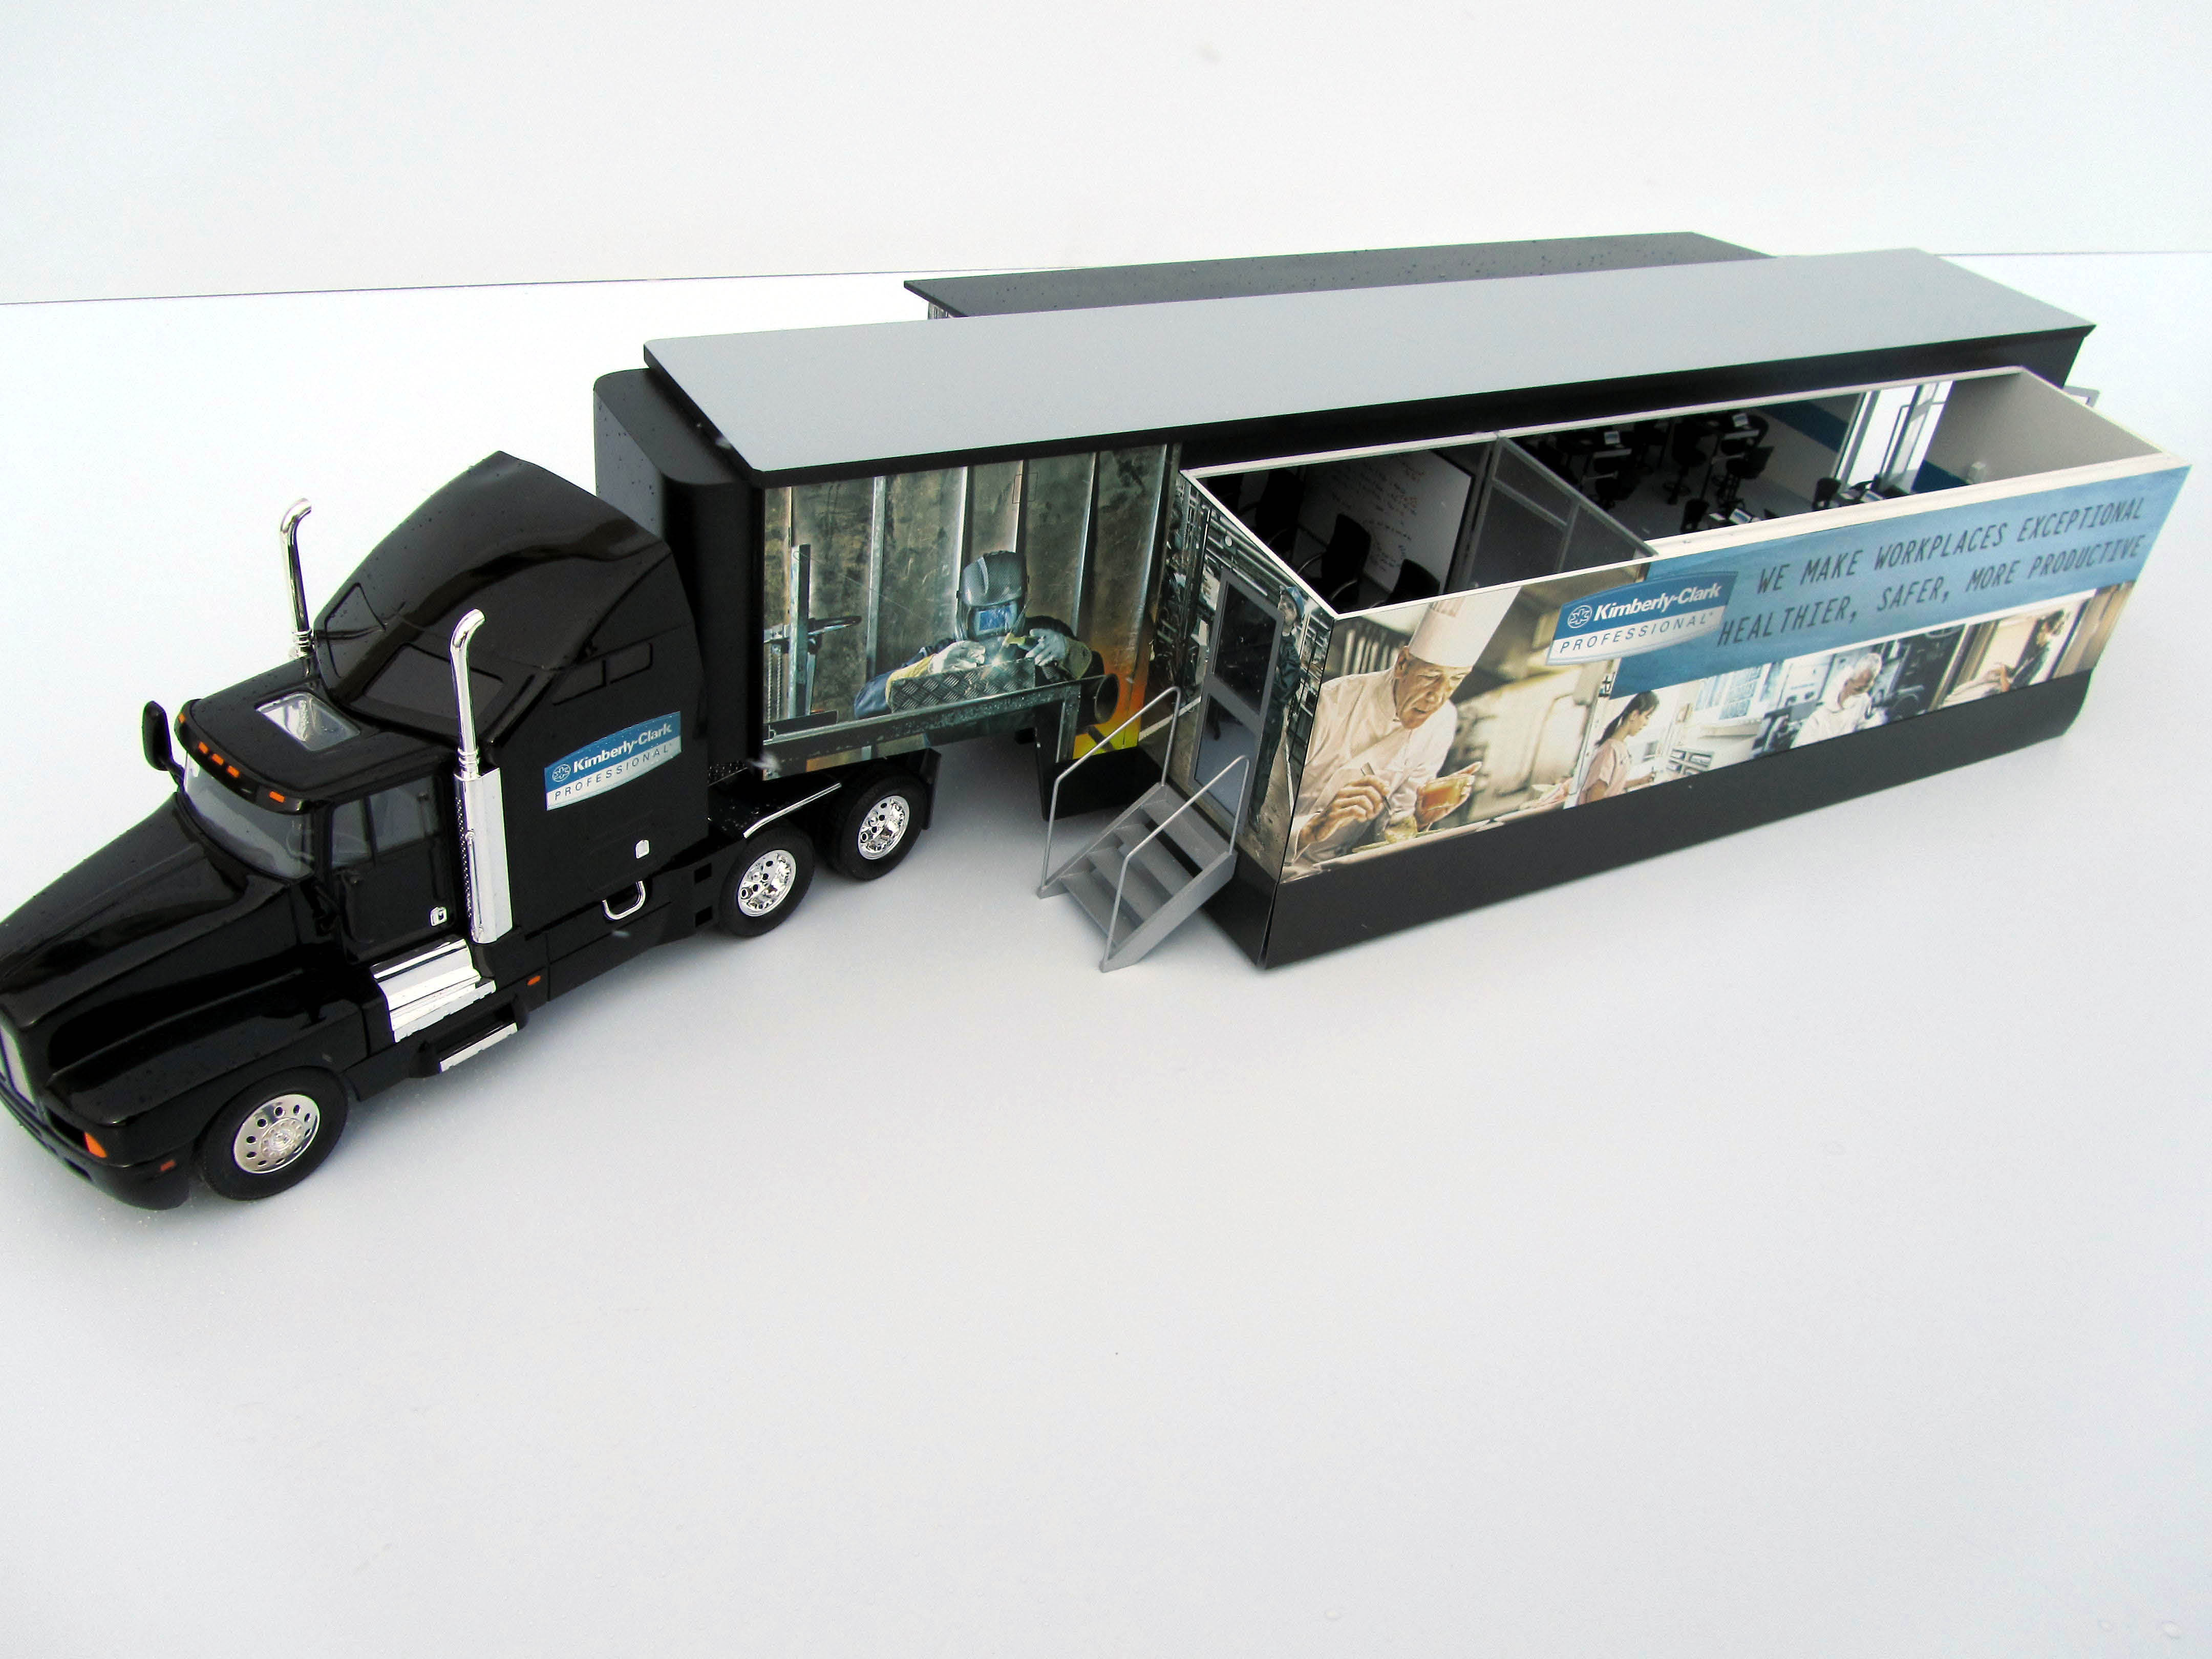 exhibit trailer model